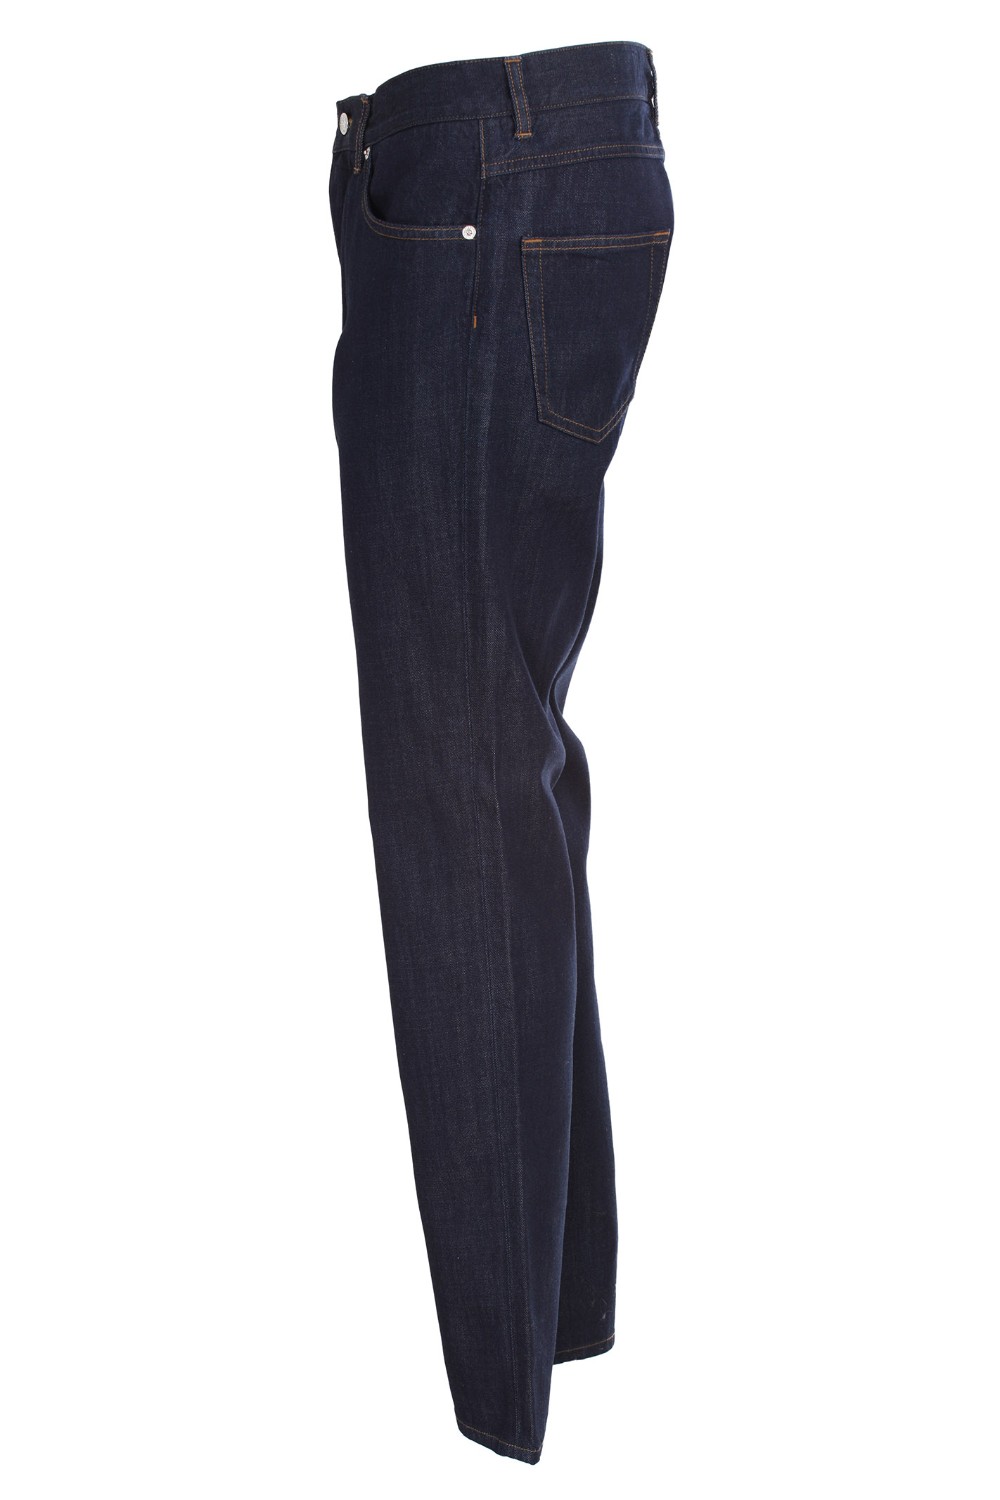 shop DOLCE & GABBANA Saldi Jeans: Dolce & Gabbana Jeans cinque tasche in denim blu scuro.
Vetibilità regolare.
Chiusura con bottone e zip nascosta.
Targhetta posteriore logata.
Made in Italy.
Composizione: 100% cotone.. GYJCCD G8AO2-S9001 number 494631